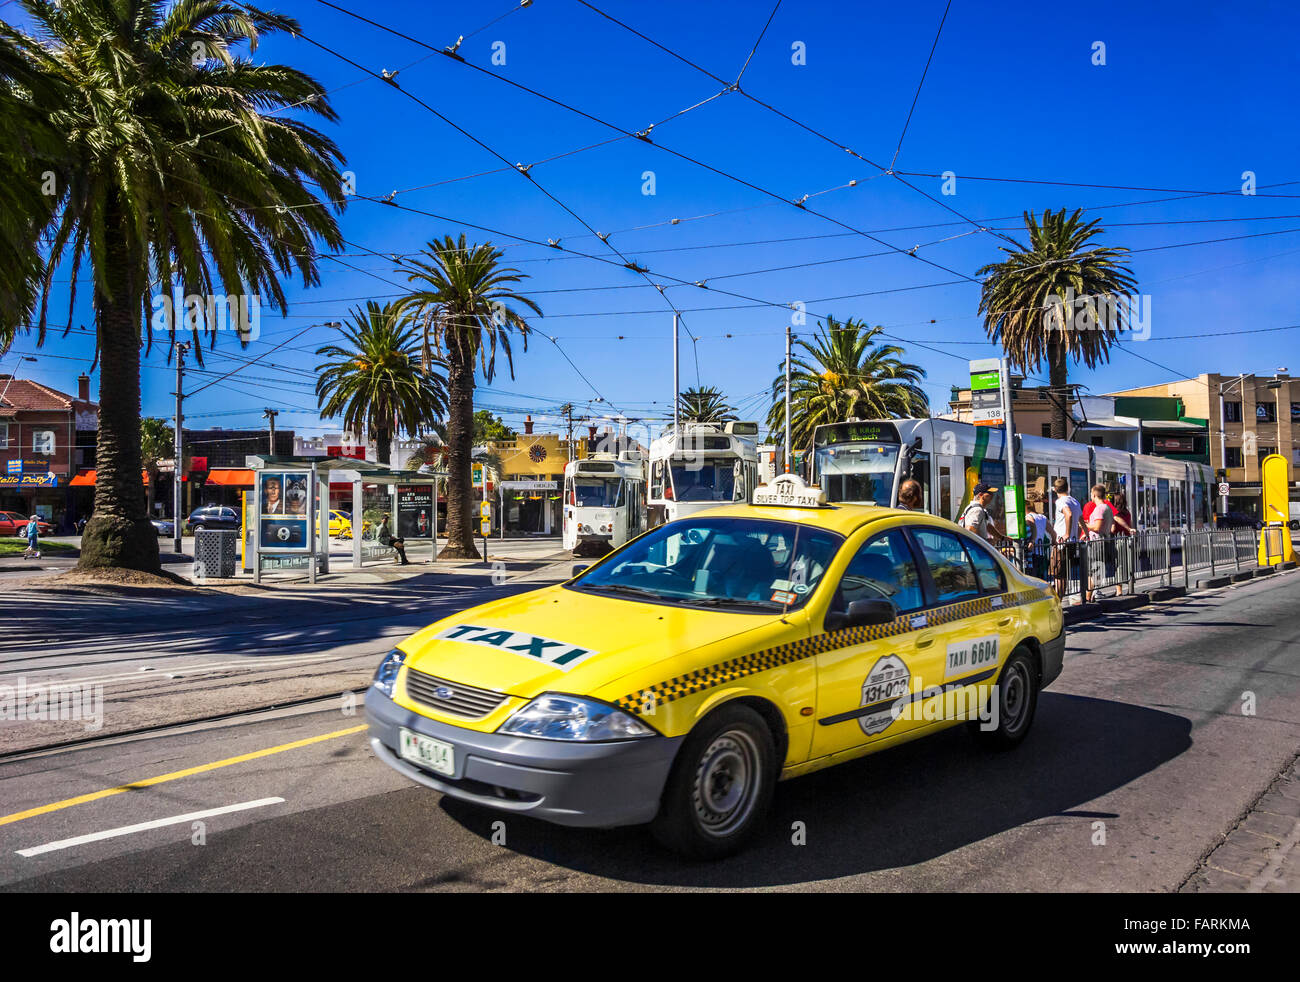 Yellow taxi cab sur St Kilda street avec des palmiers et des tramways en arrière-plan, Melbourne, Australie Banque D'Images